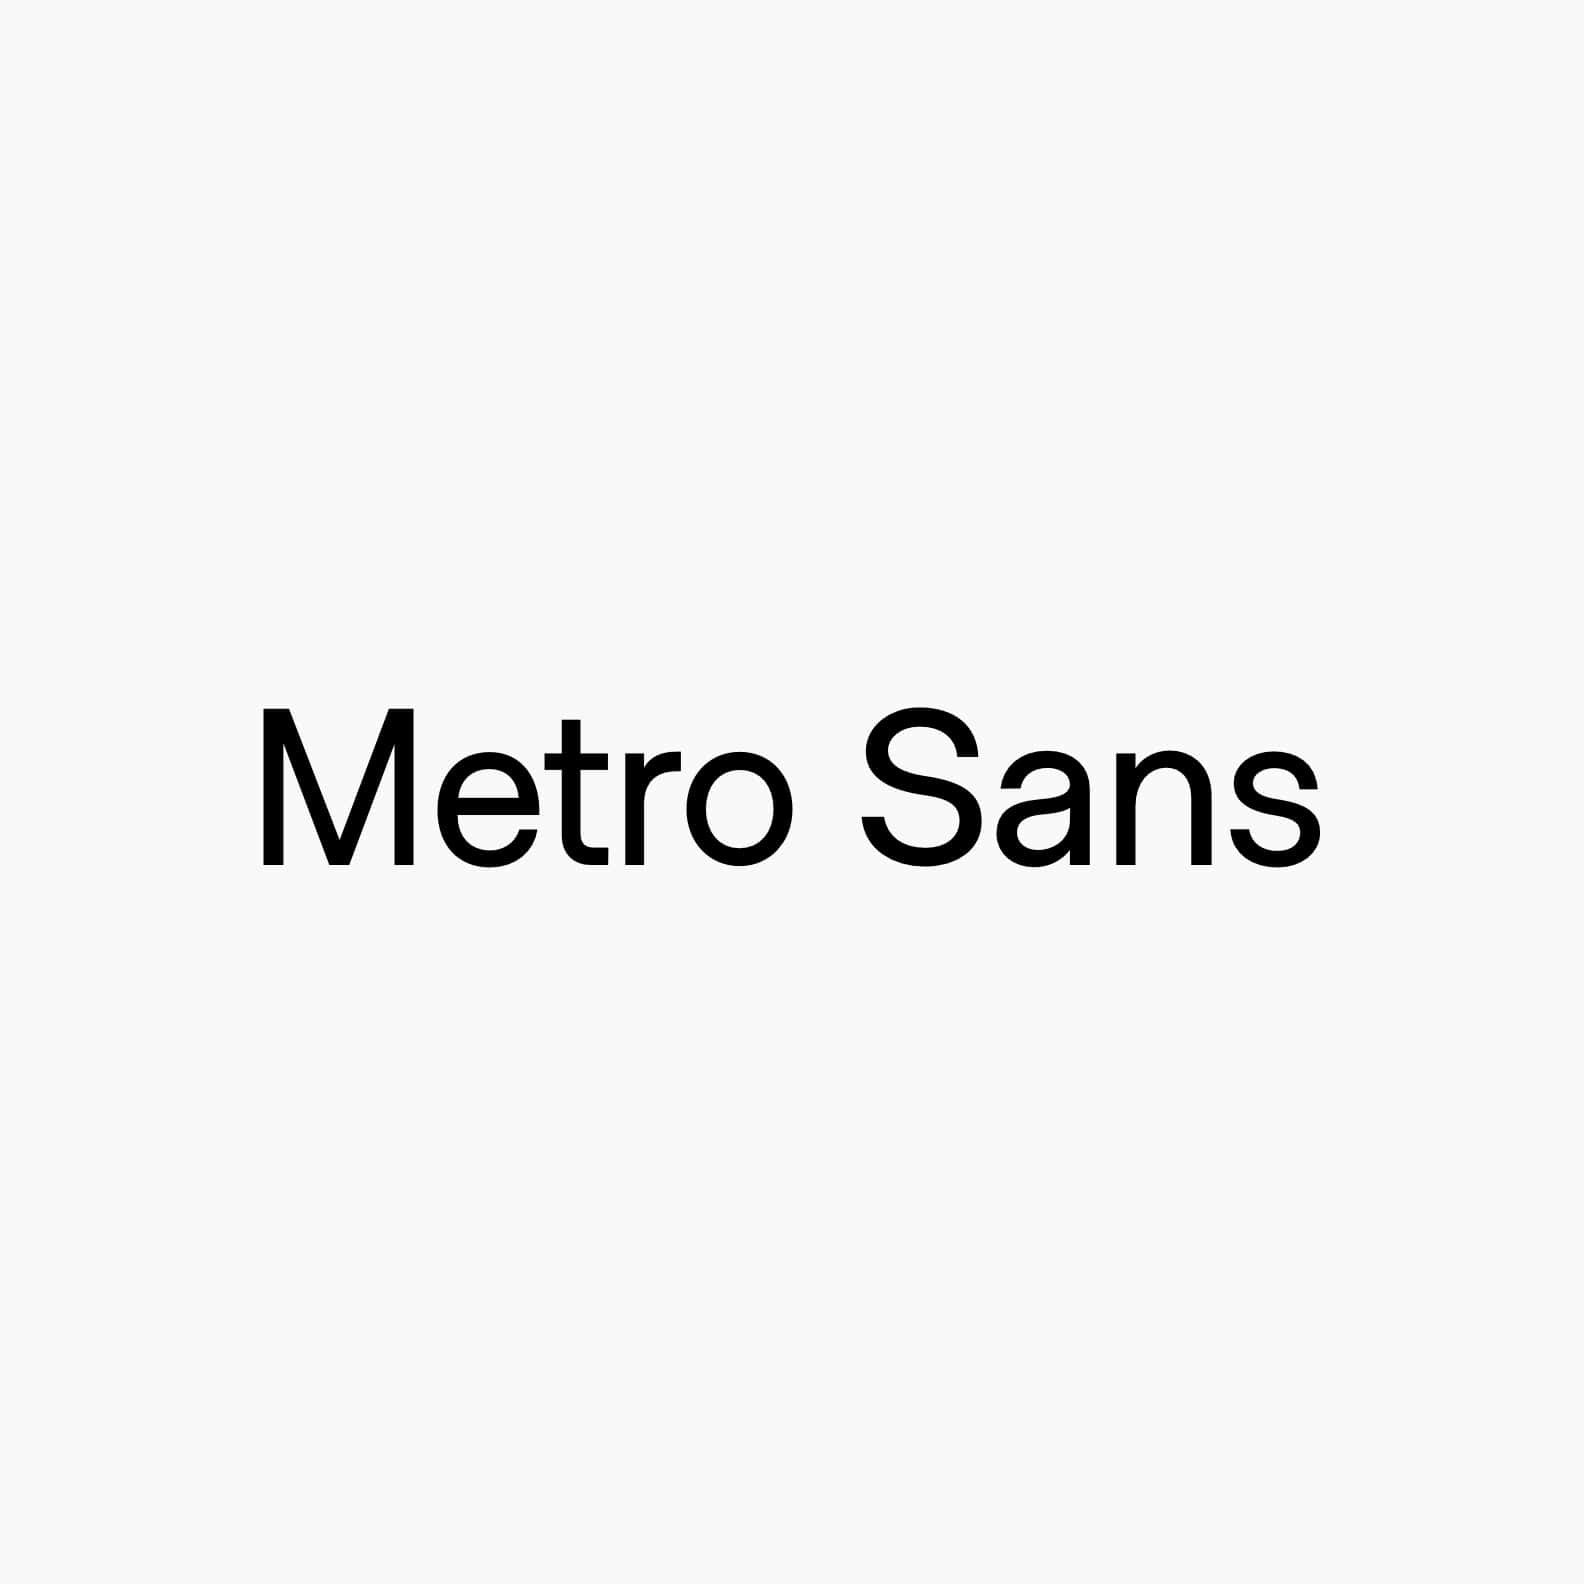 Metro Sans - Full Family